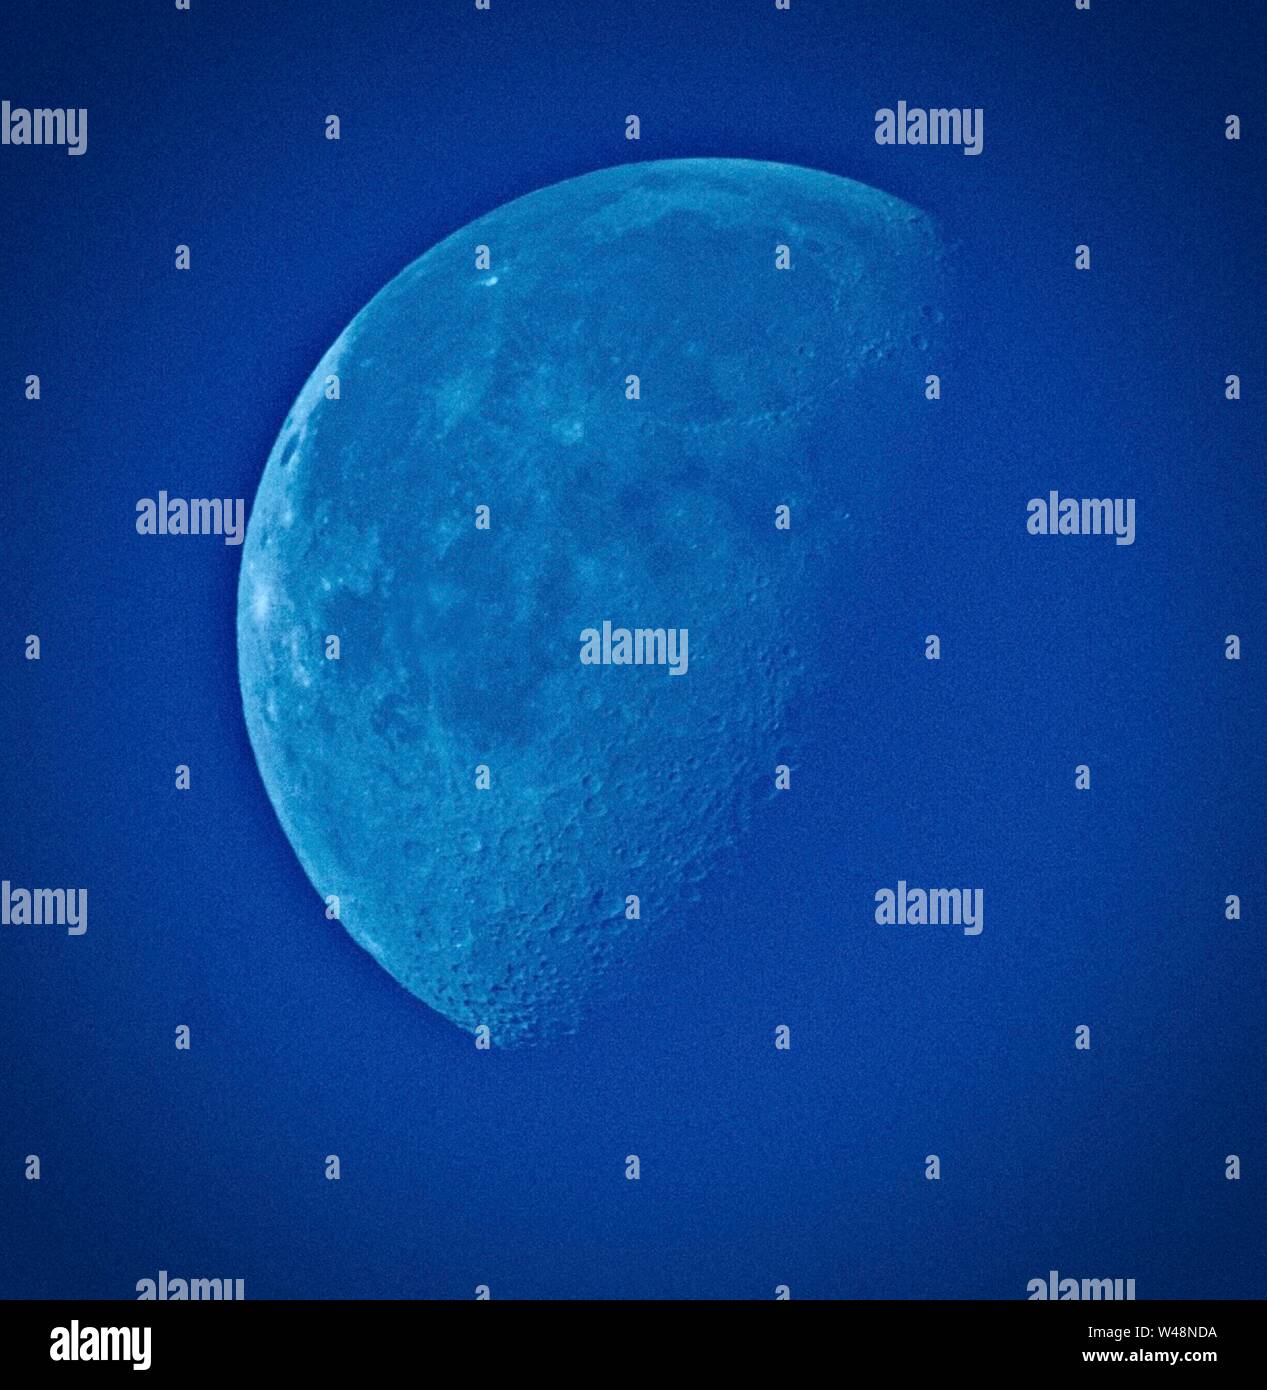 Ein Blue Moon shot an einem sonnigen Nachmittag. Das Bild wurde manipuliert Kontrast, aber keine künstliche Farbe zu erhöhen ist eingeführt worden. Der Effekt tritt auf, wenn die richtige Art von Staub in der Atmosphäre trat Herausfiltern von übermäßigen rotes Licht - die Phrase 'Once In A Blue Moon" ist ein seltenes Ereignis. Stockfoto